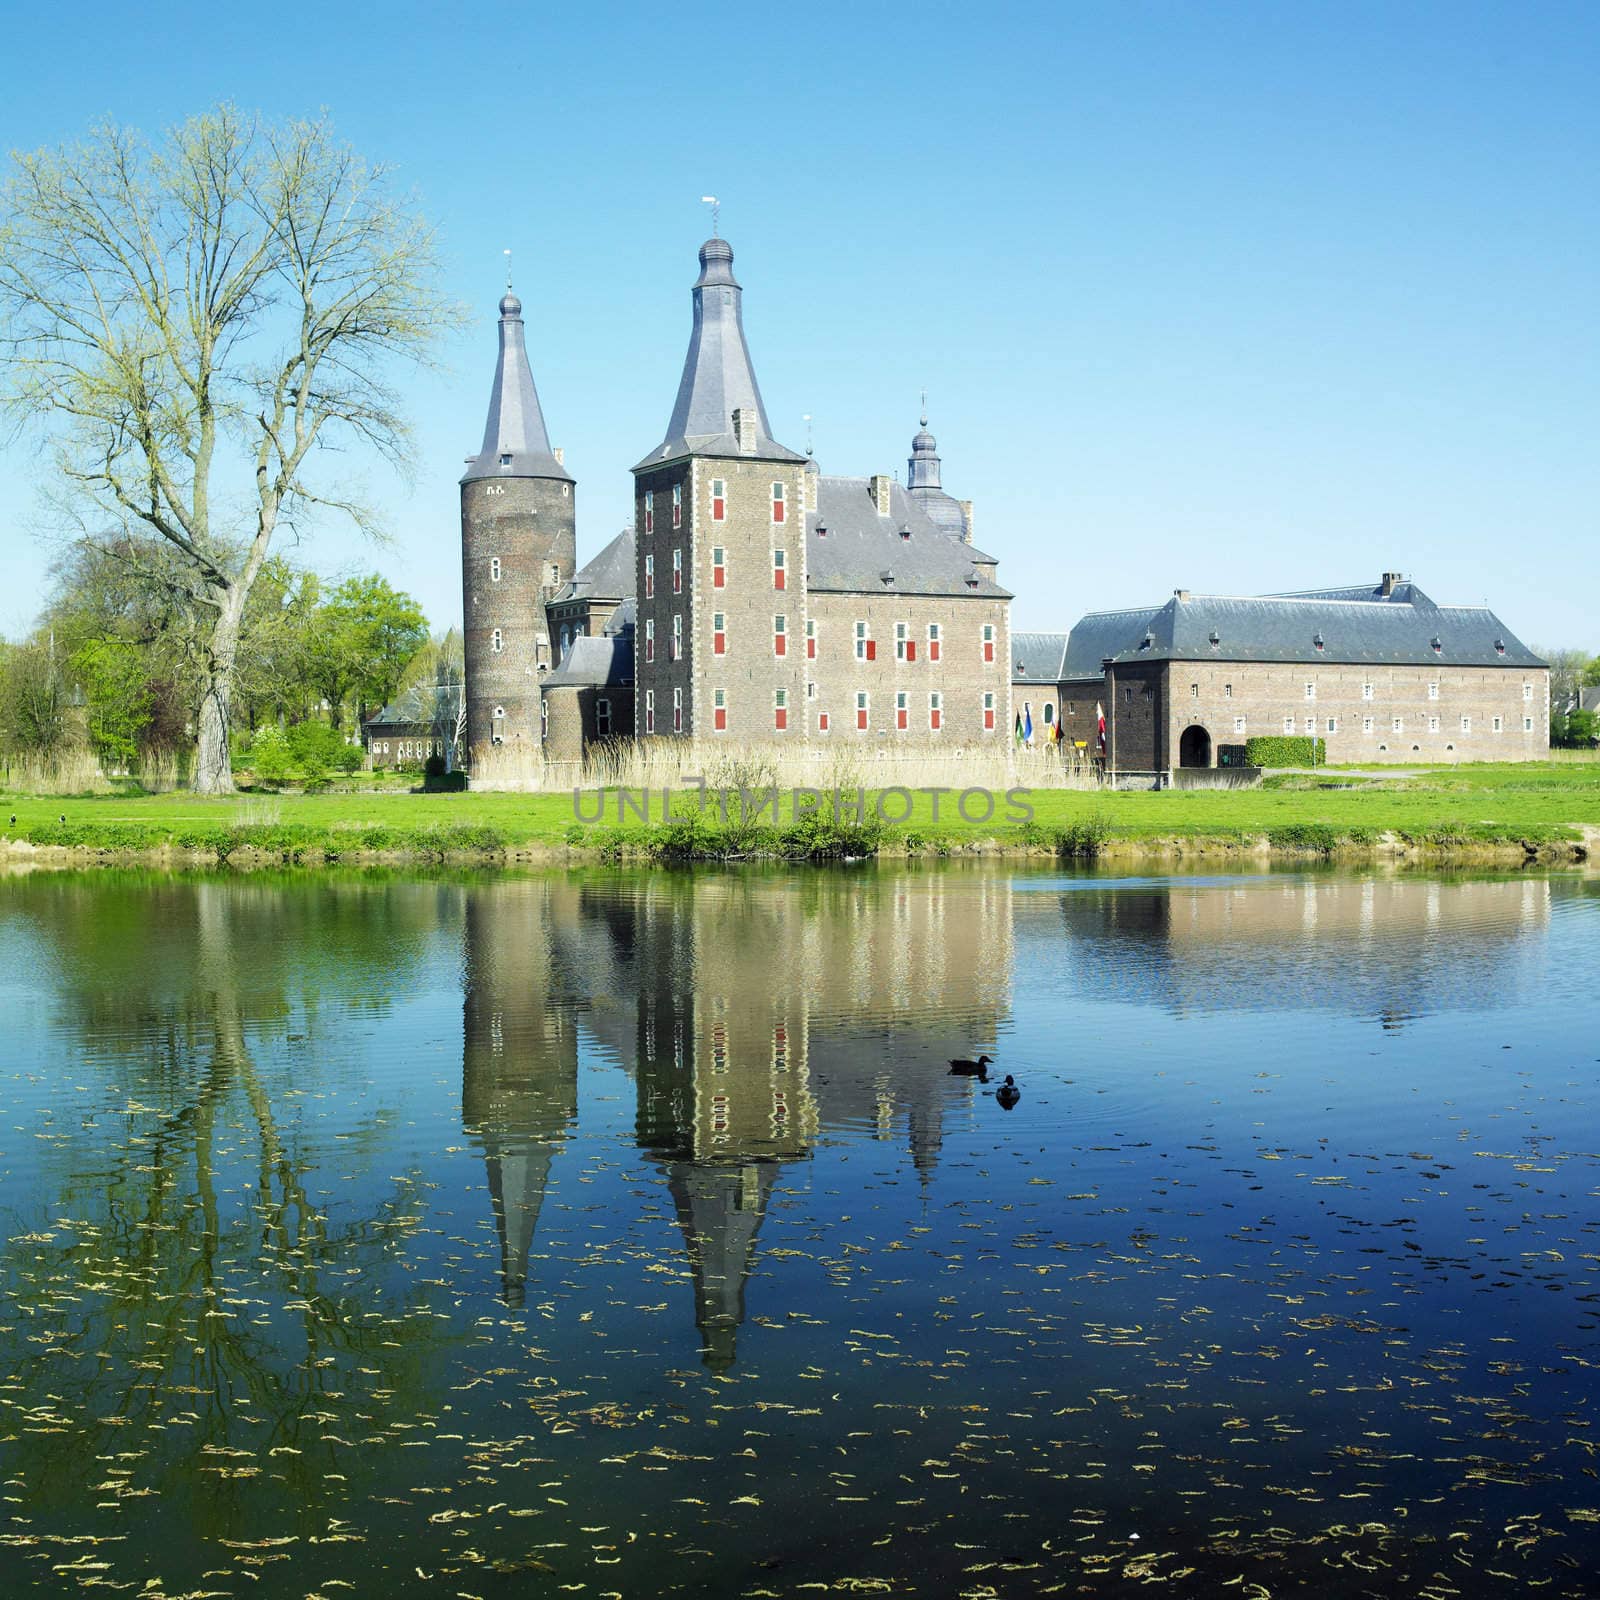 Heerlen Castle, Netherlands by phbcz